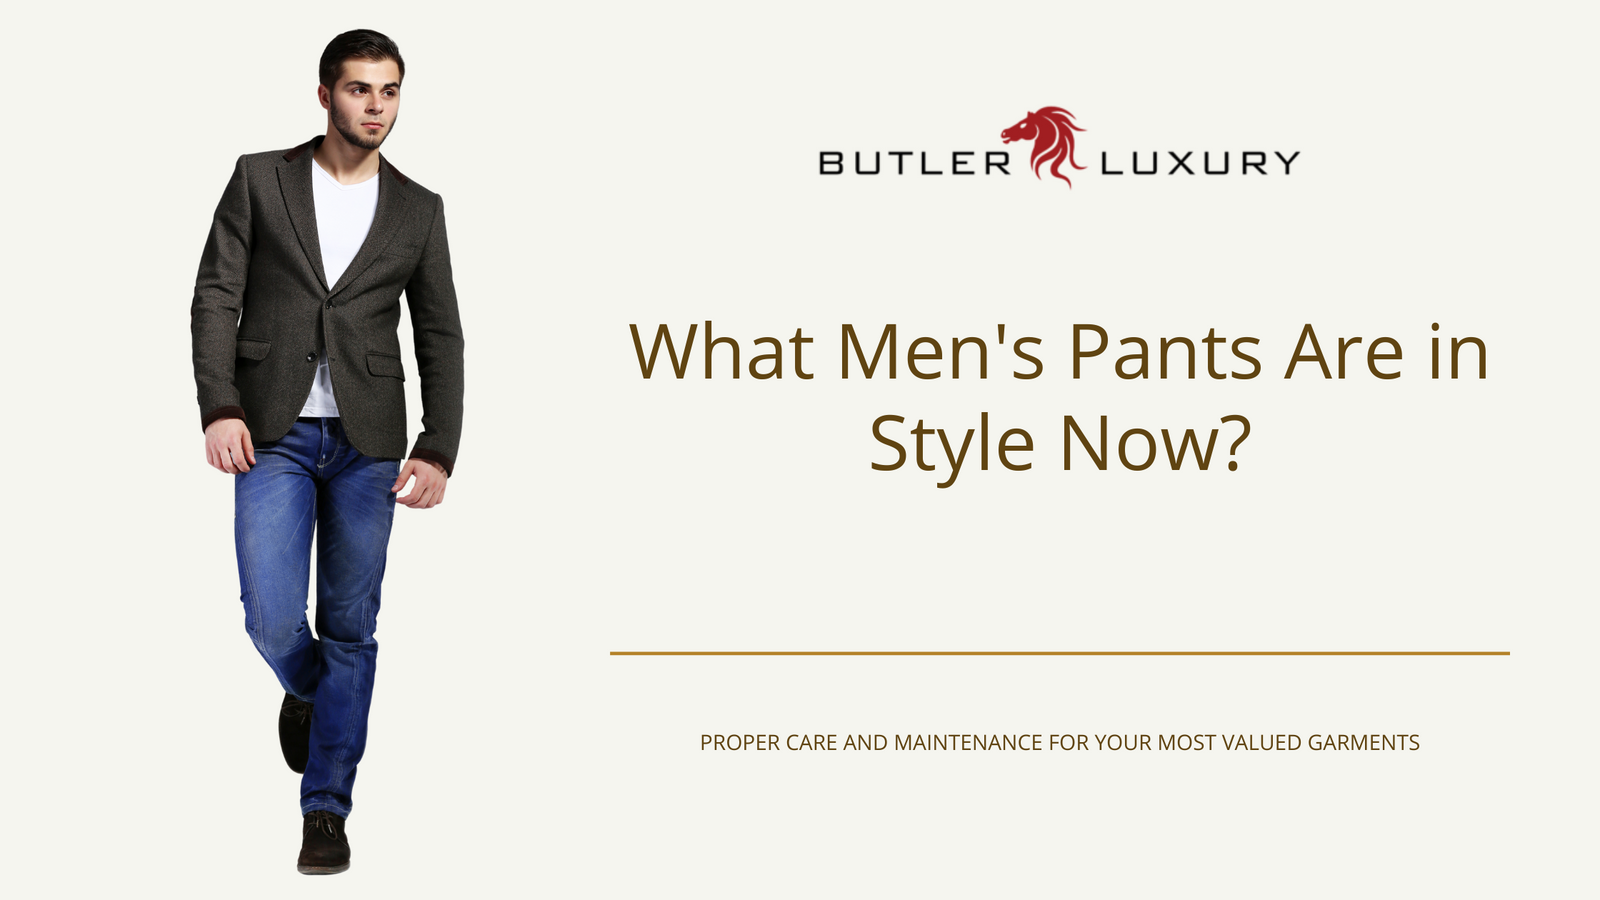 Wool Cigarette Pants - Men - Ready-to-Wear